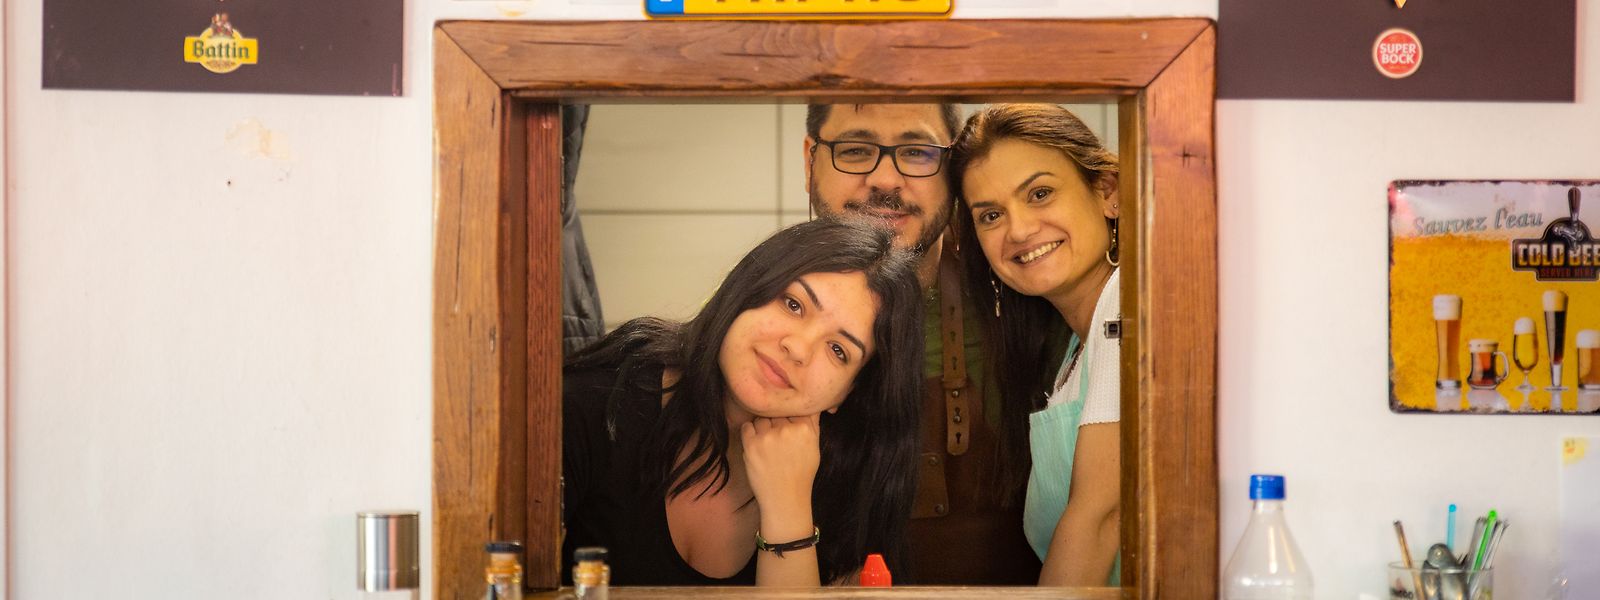 António Castanho, com a mulher Sónia e a filha Maria, de 19 anos, numa foto no seu restaurante em Esch.